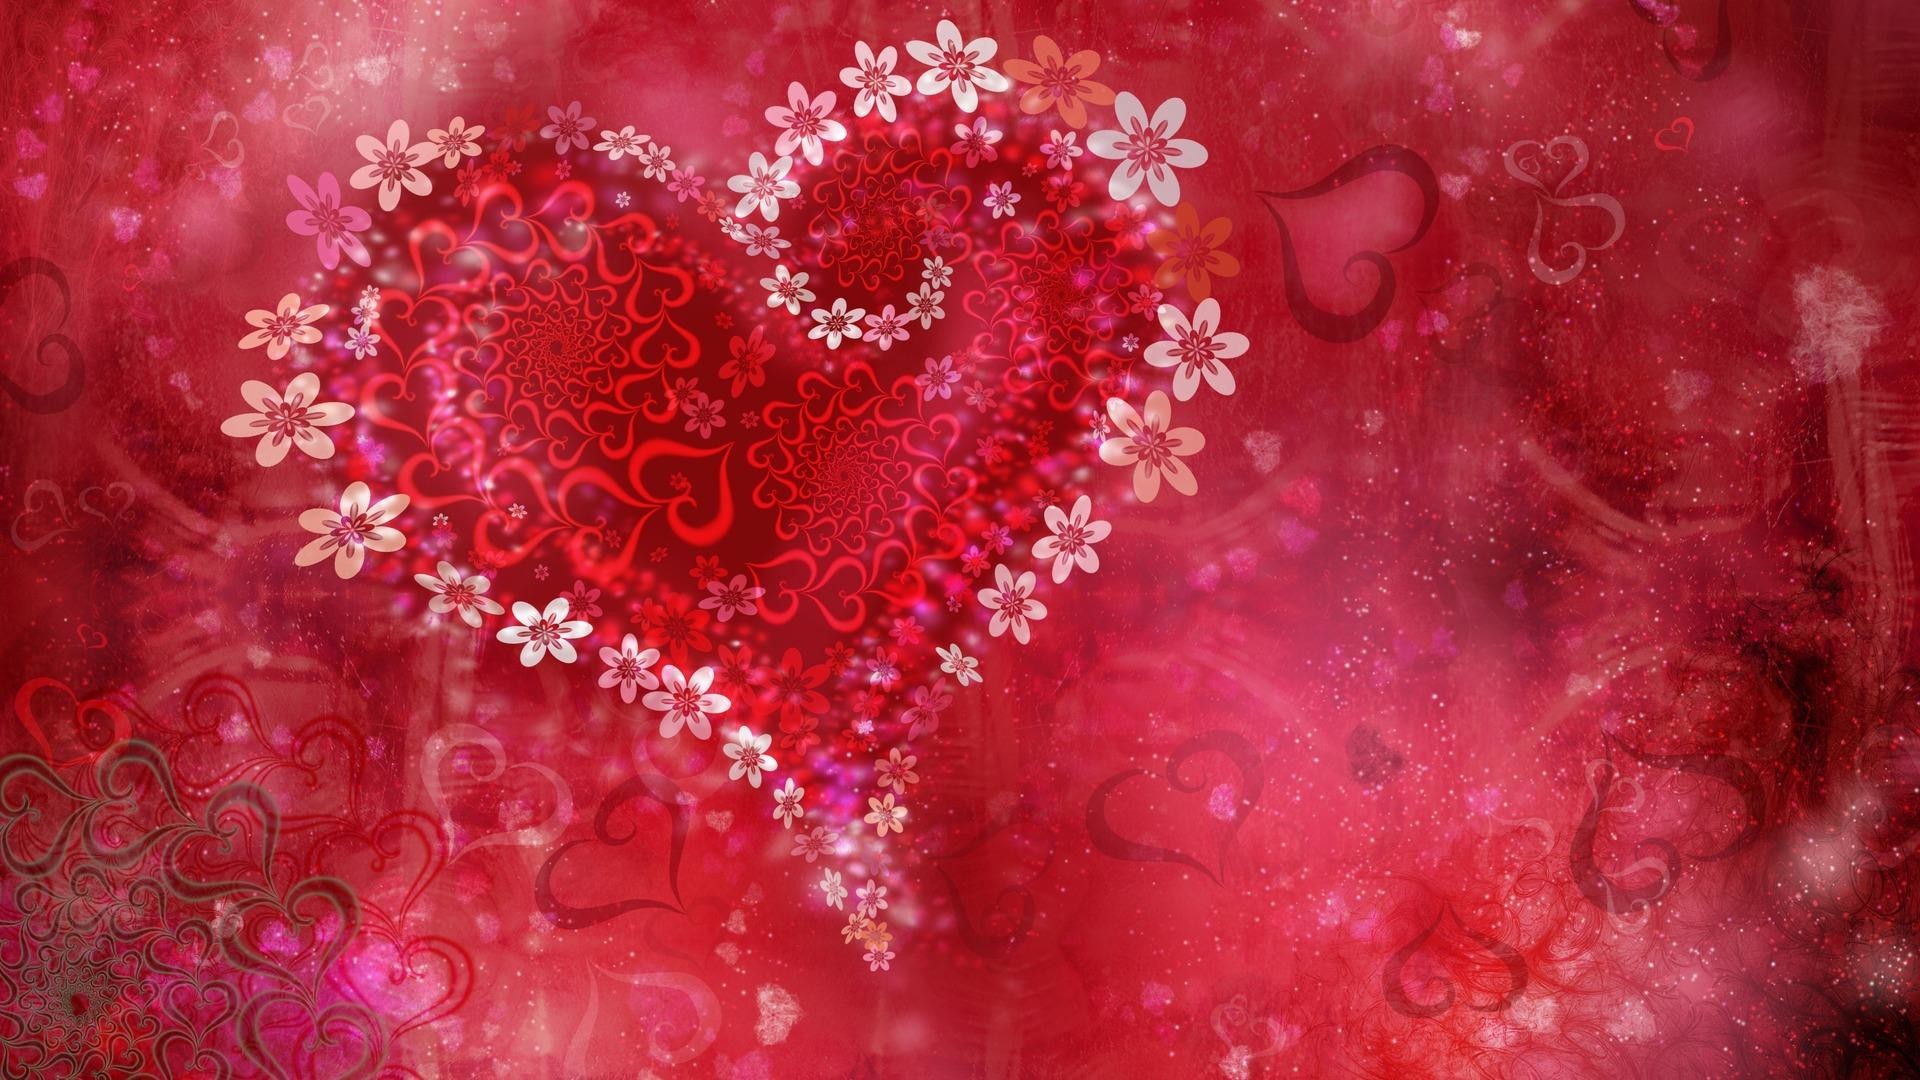 Pink love heart wallpaper